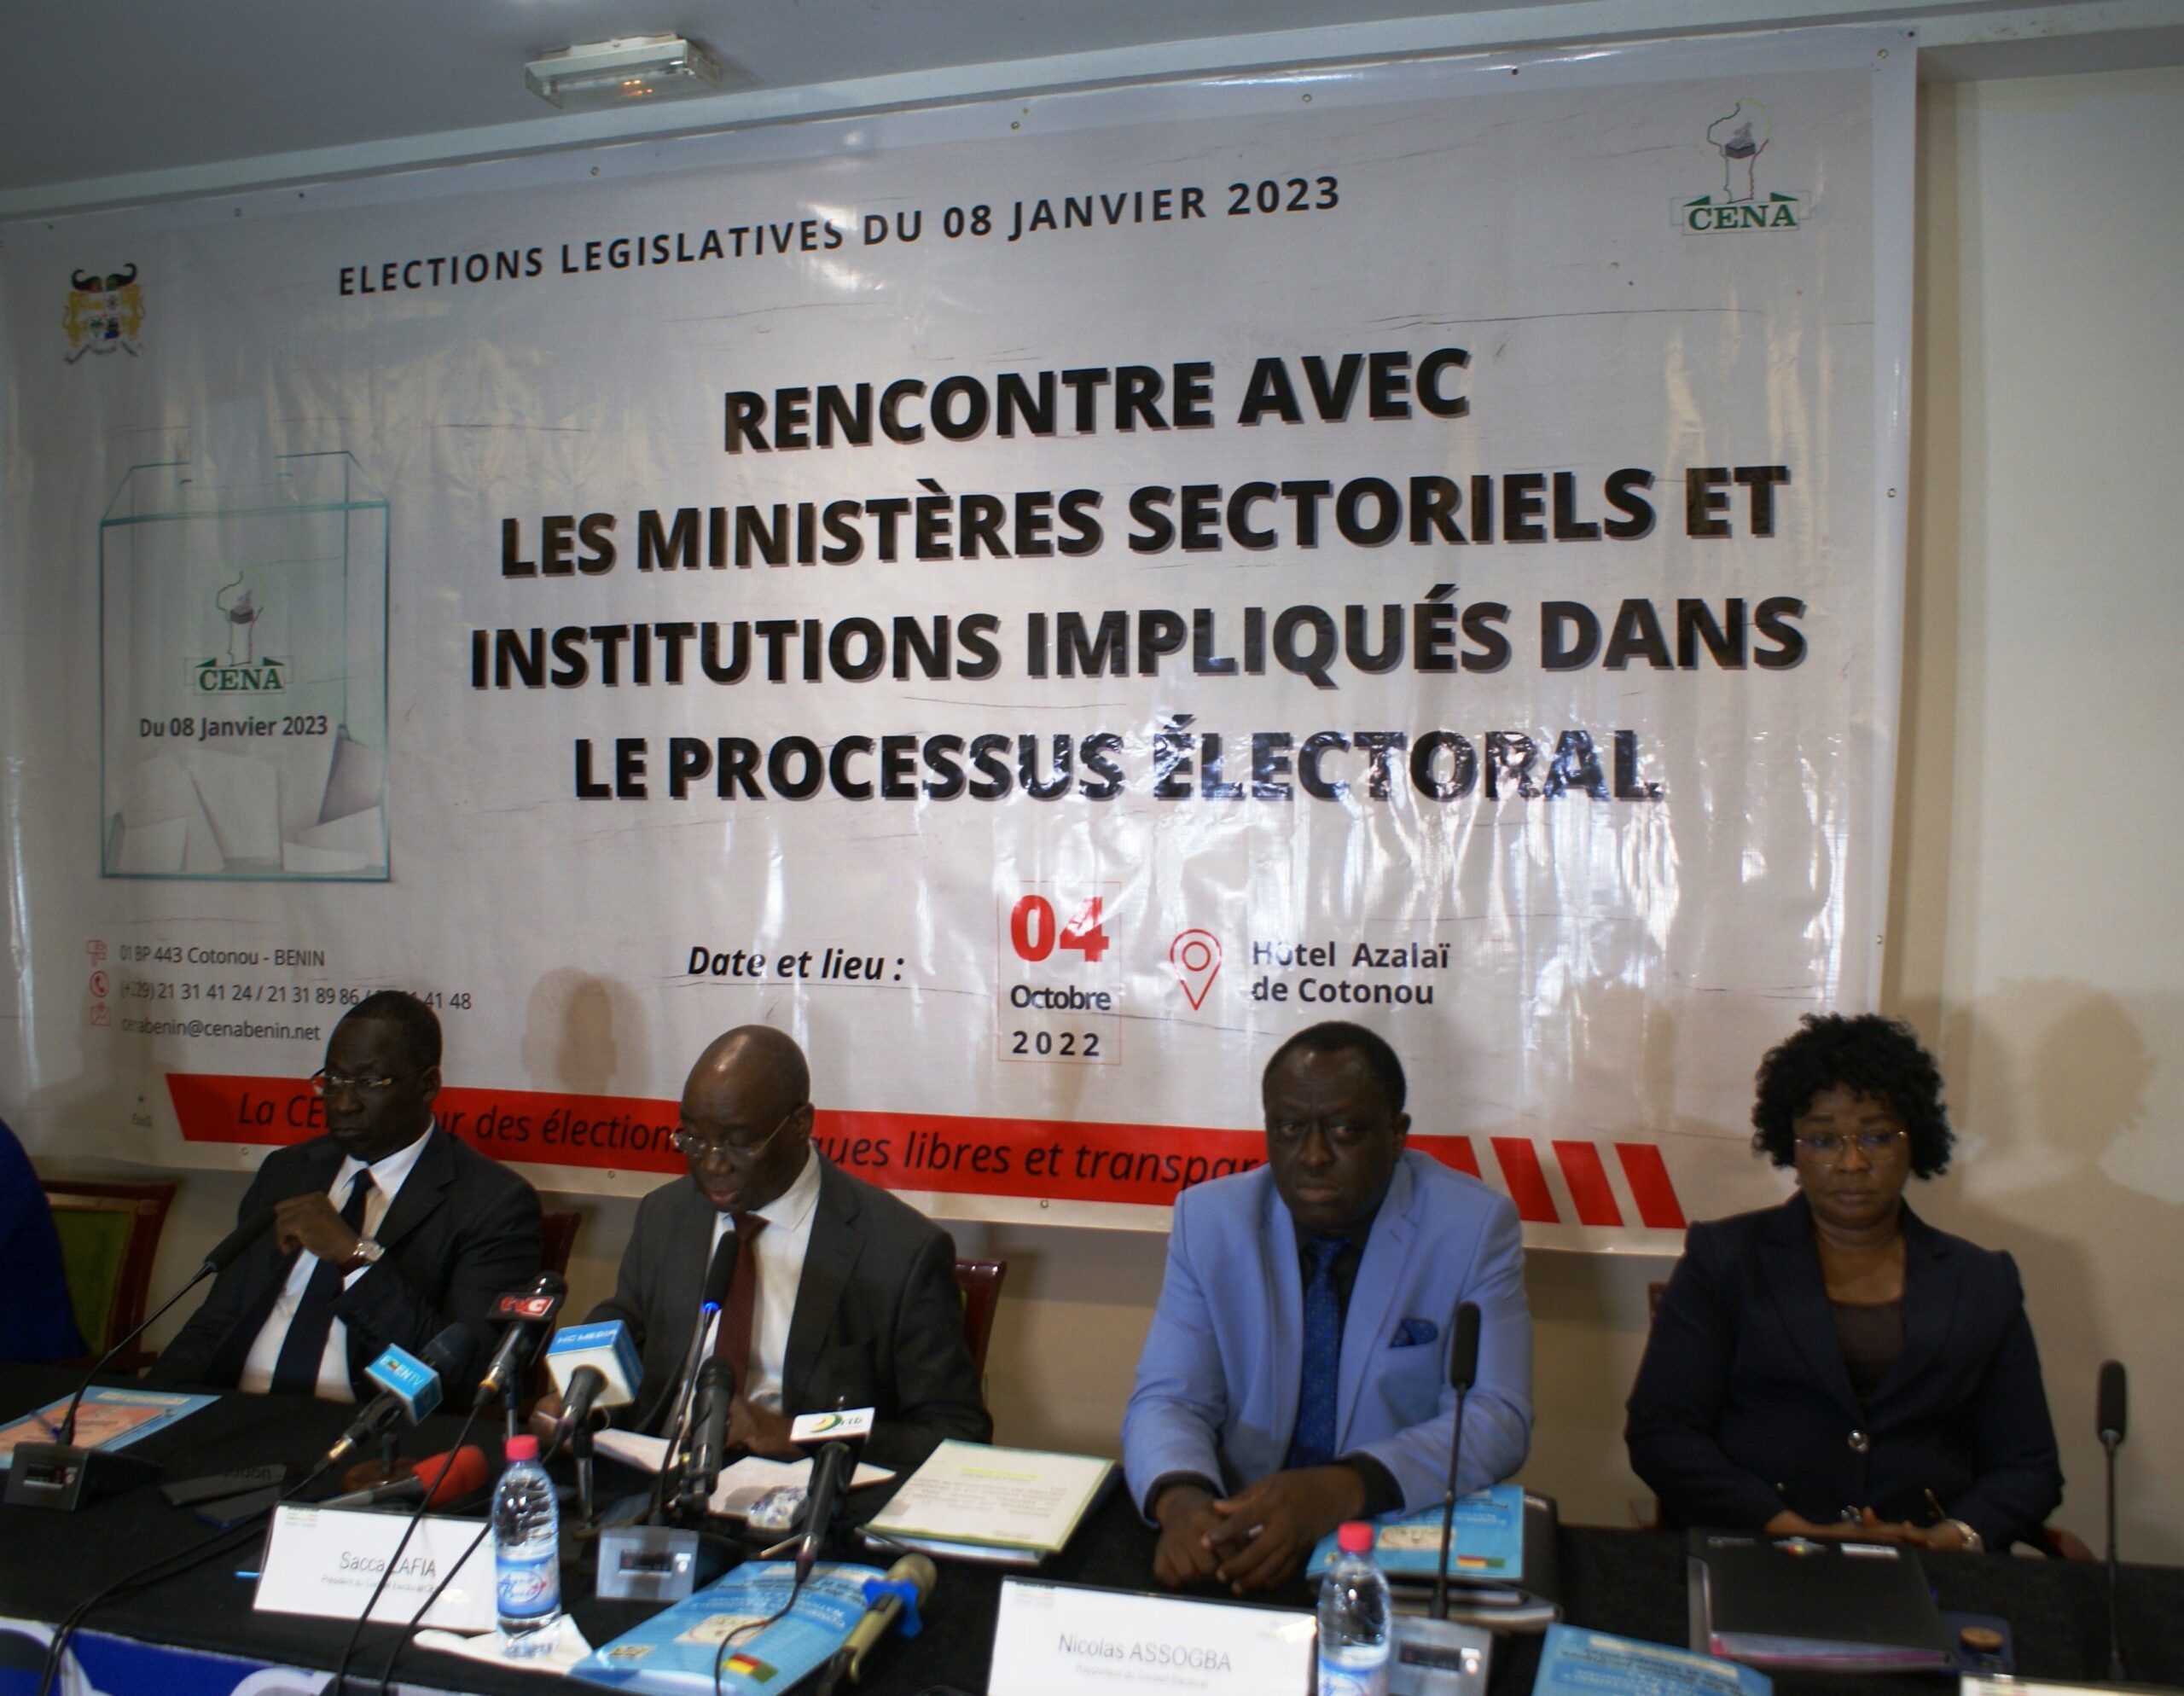 Elections législatives du 08 Janvier 2023 au Bénin: Des cadres des ministères sectoriels et institutions outillés pour accompagner la Céna